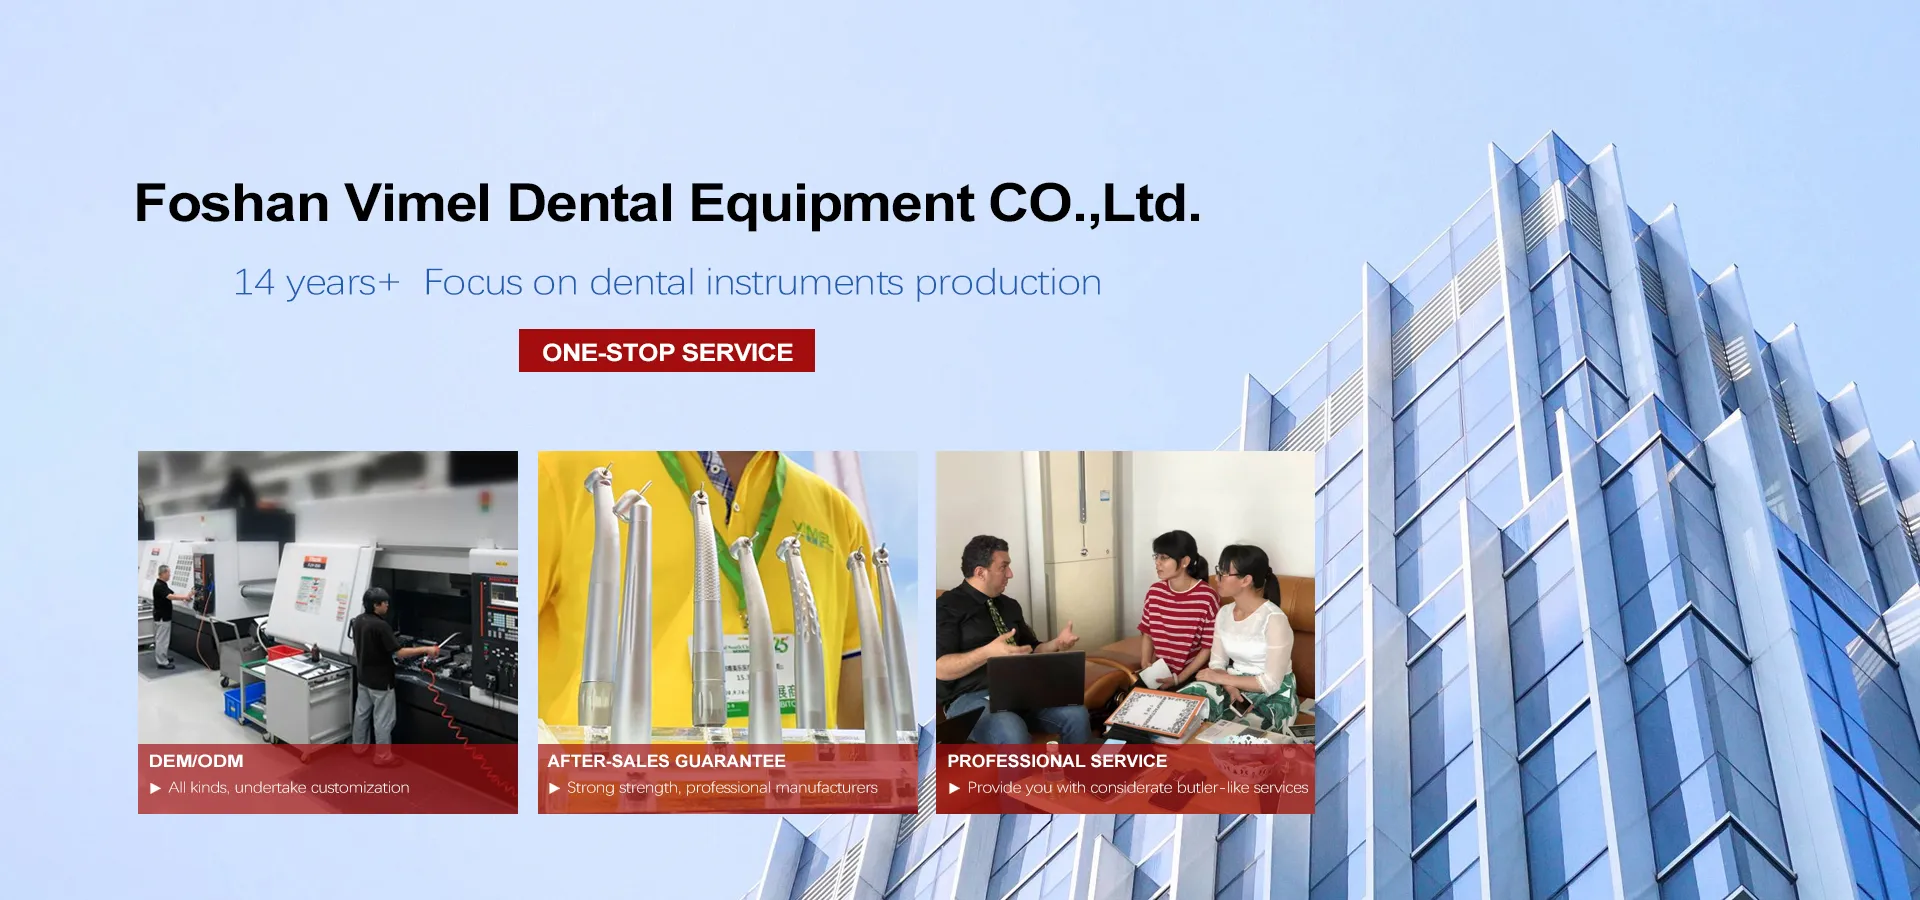 Foshan Vimel Dental Equipment Co., Ltd